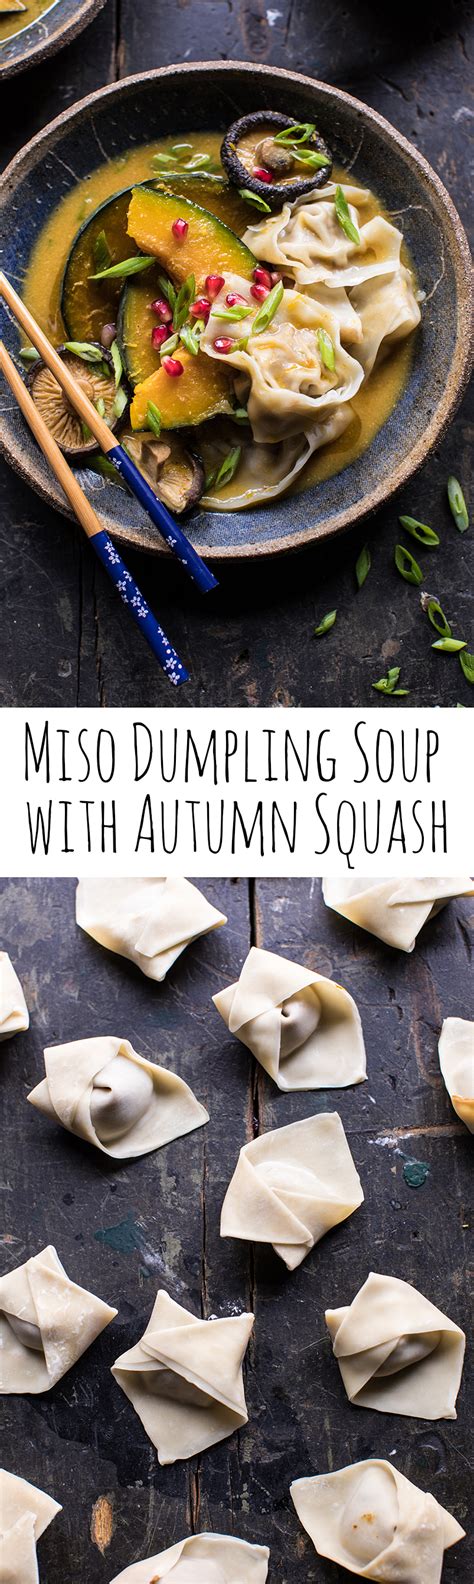 Miso Dumpling Soup With Autumn Squash Recipe Dumplings For Soup